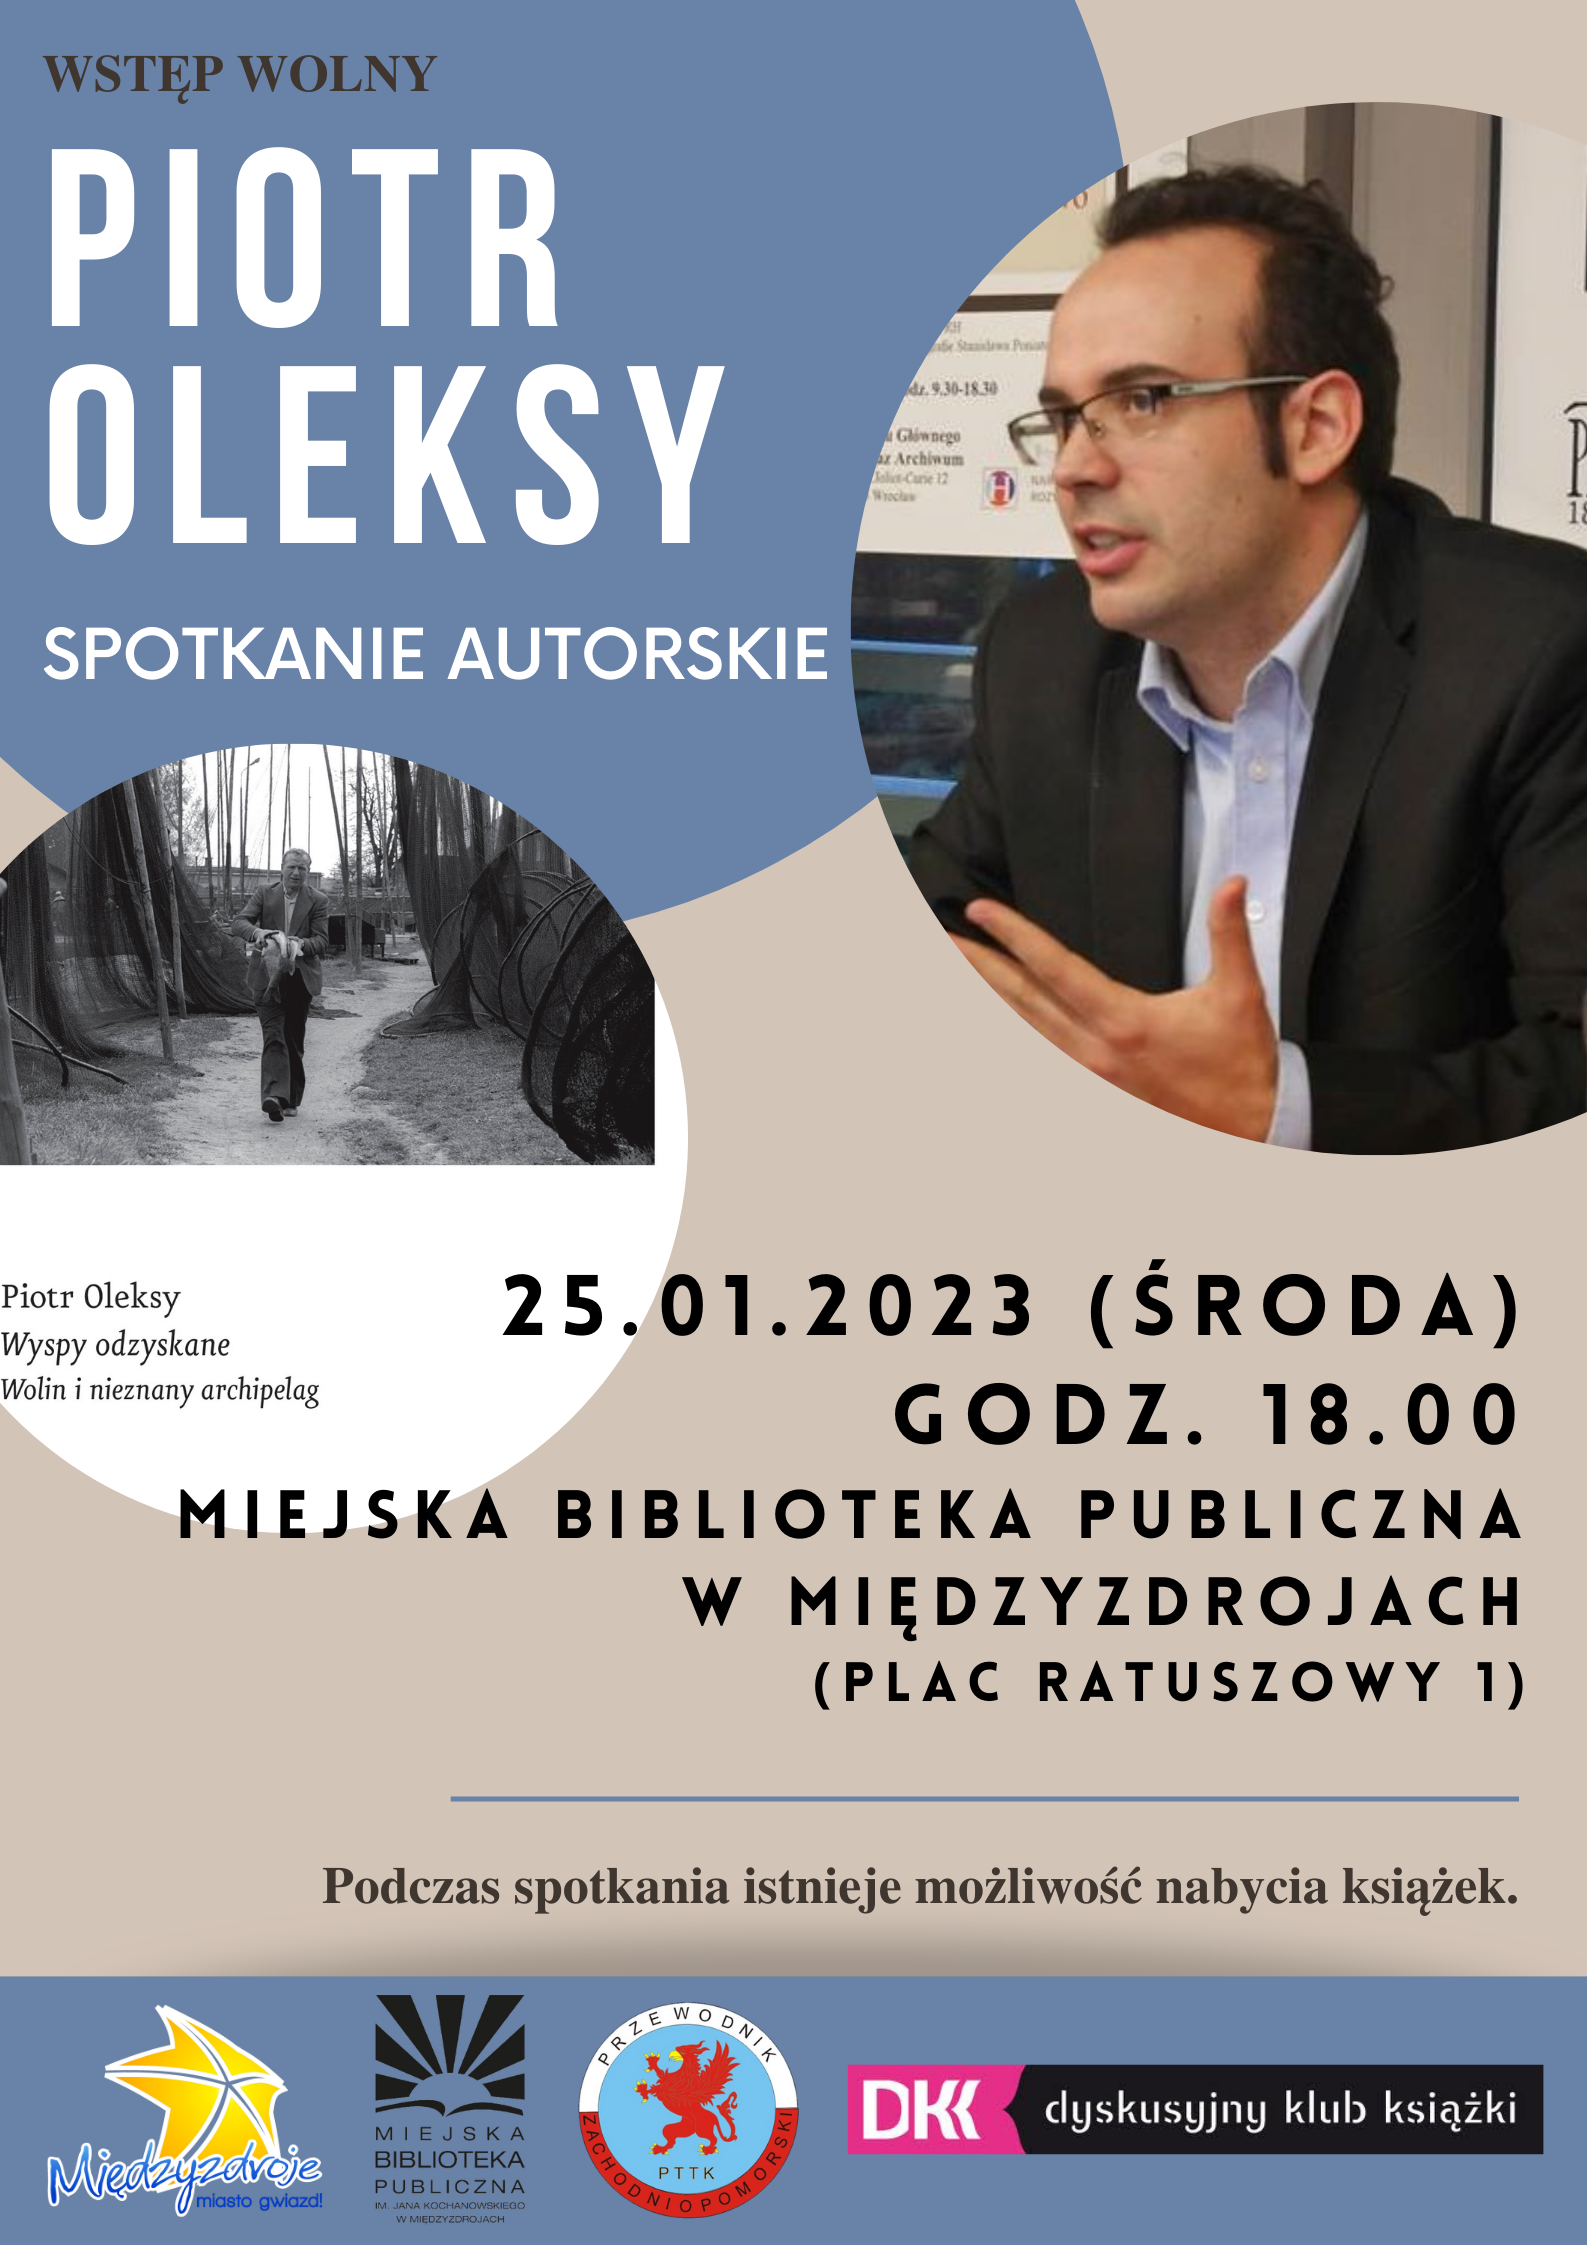 Spotkanie autorskie z Piotrem Oleksym w międzyzdrojskiej bibliotece 25 stycznia 2023 r. - zapowiedź